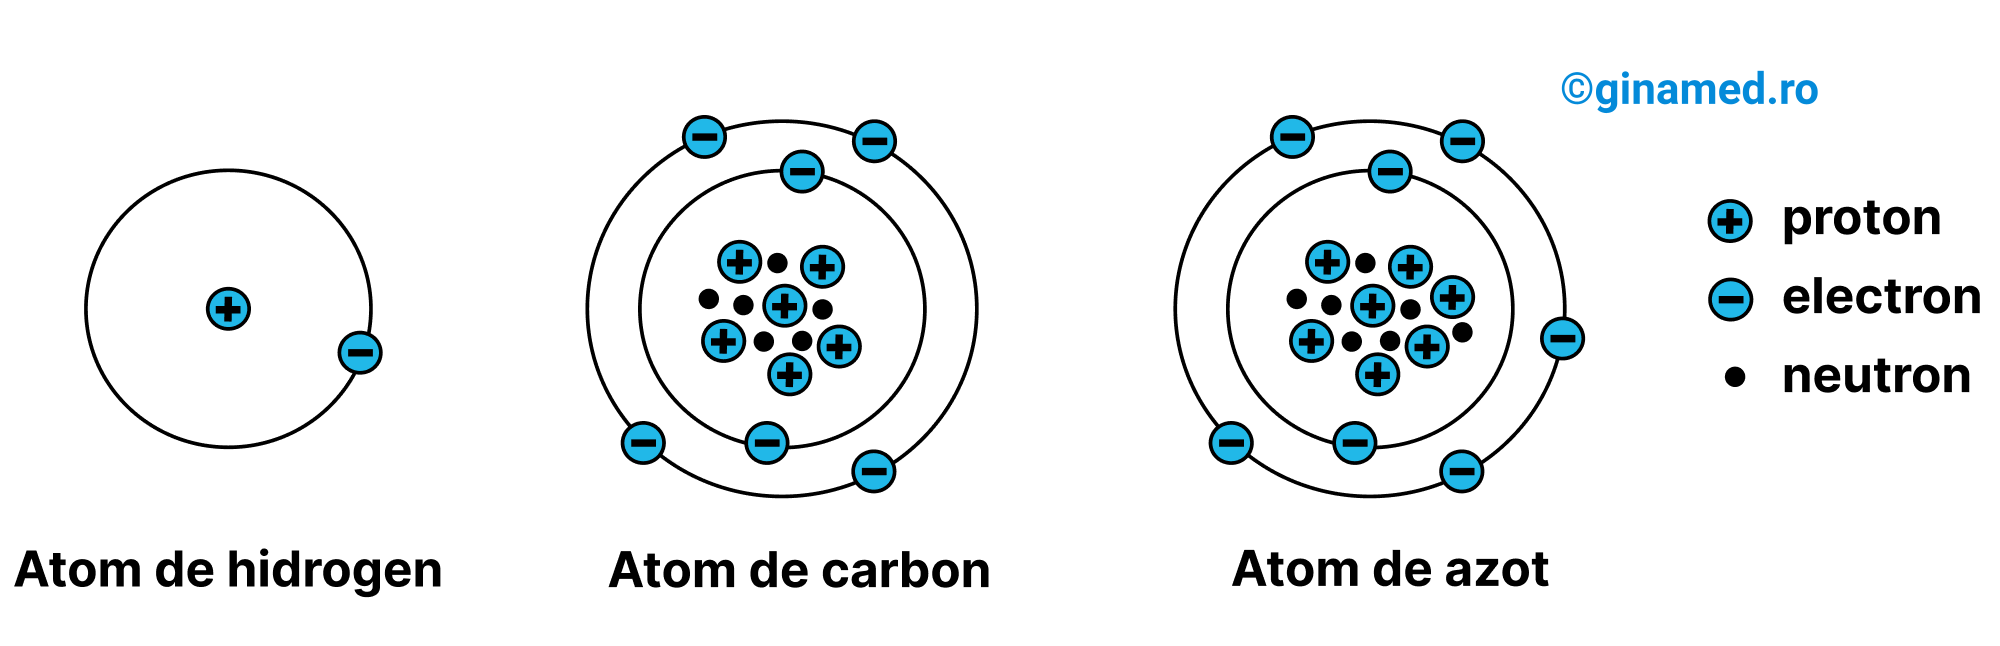 Structura atomilor de hidrogen, carbon și azot. Particulele esențiale din alcătuirea atomului.